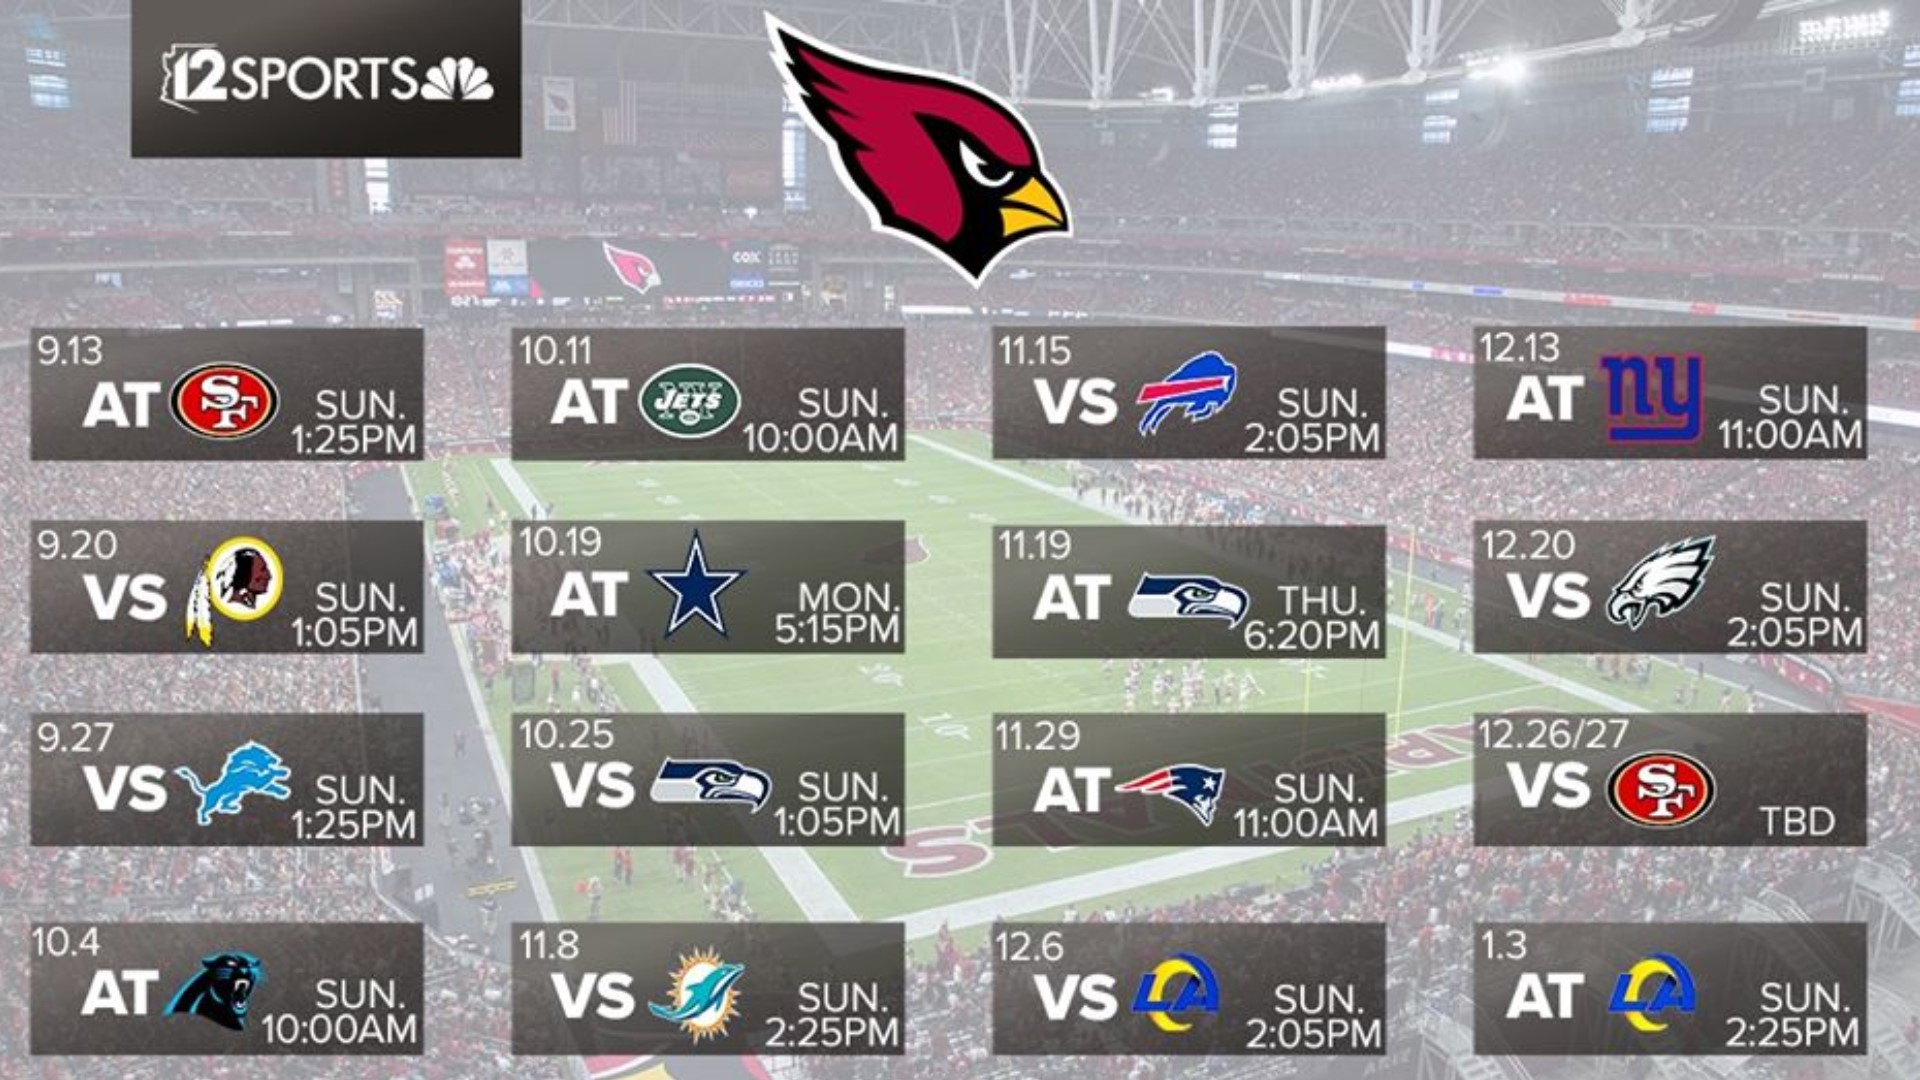 Arizona Cardinals 2020 NFL schedule released | 12news.com